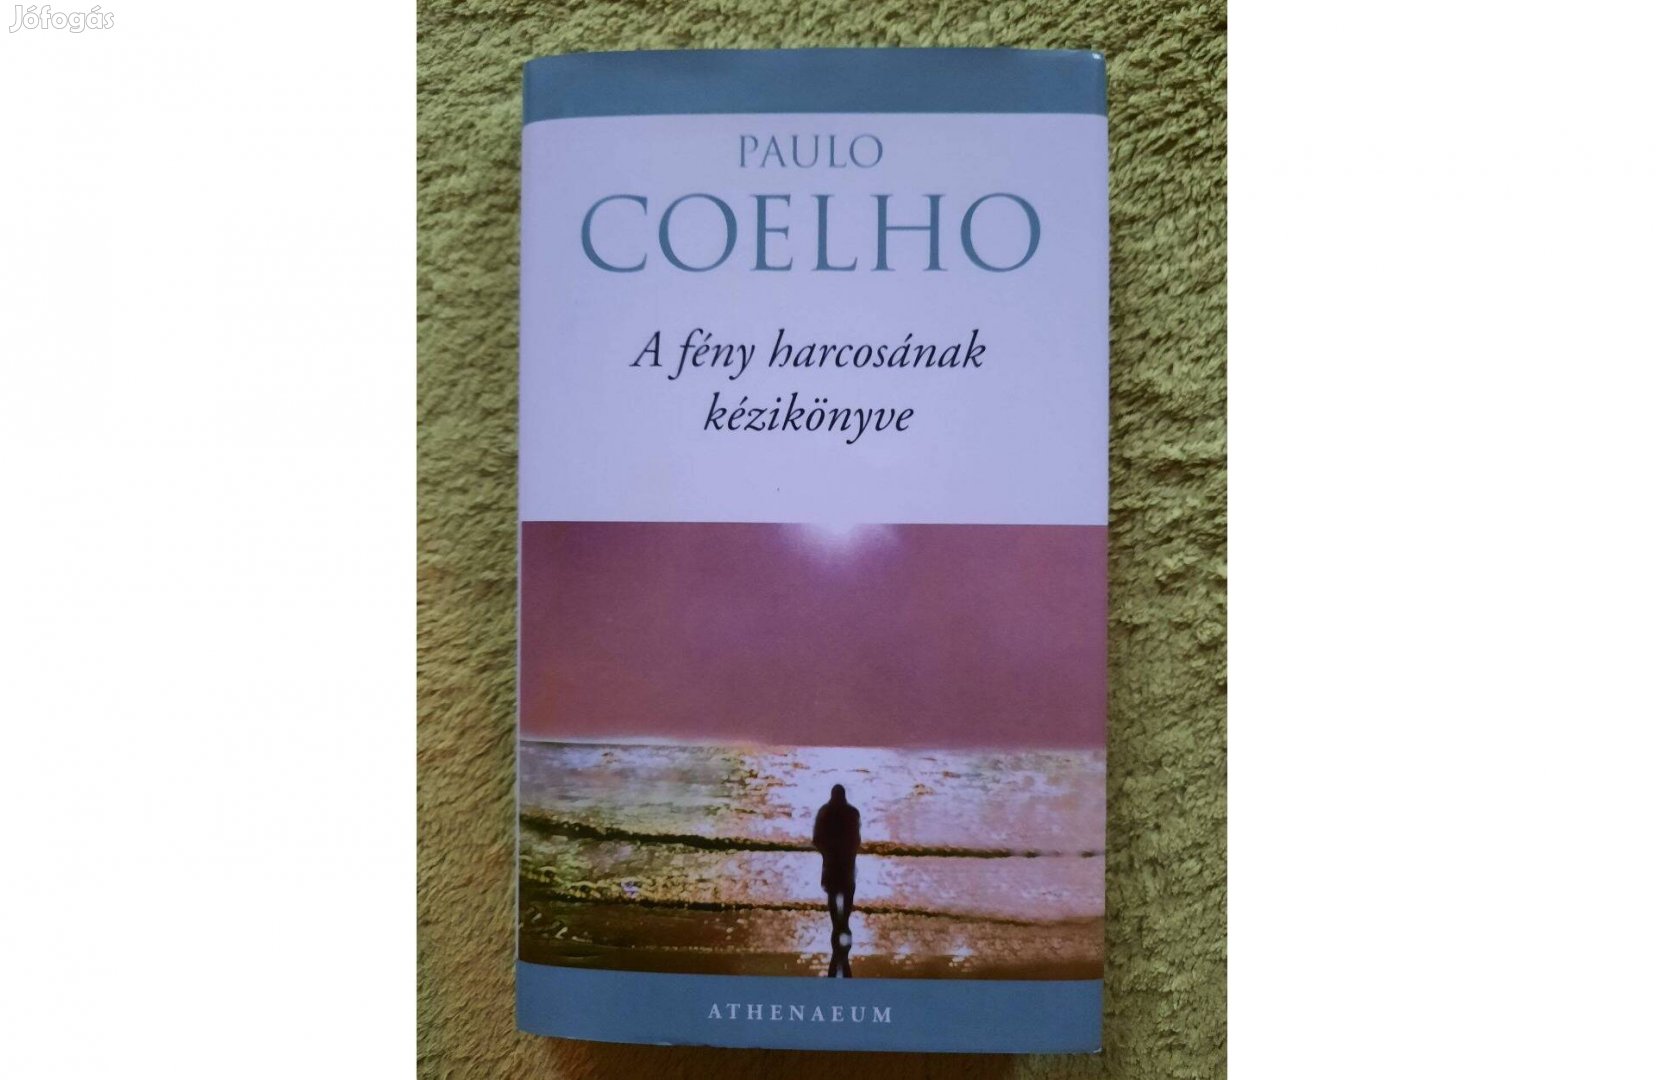 Paulo Coelho: A fény harcosának kézikönyve